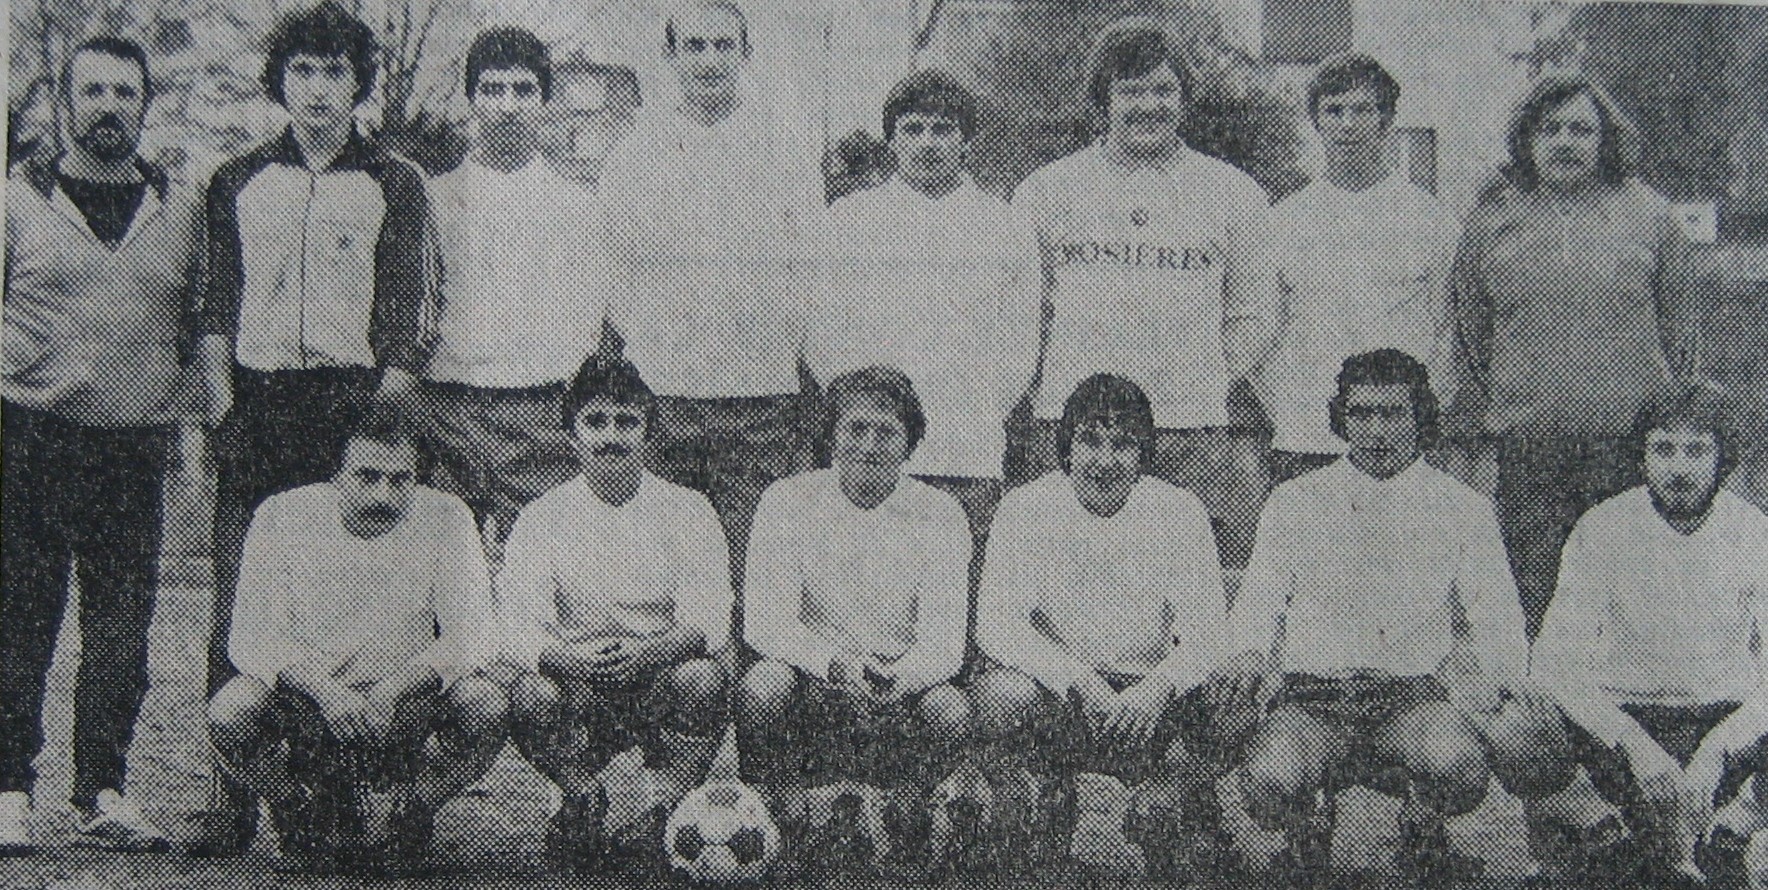 Séniors 1A 1979-80